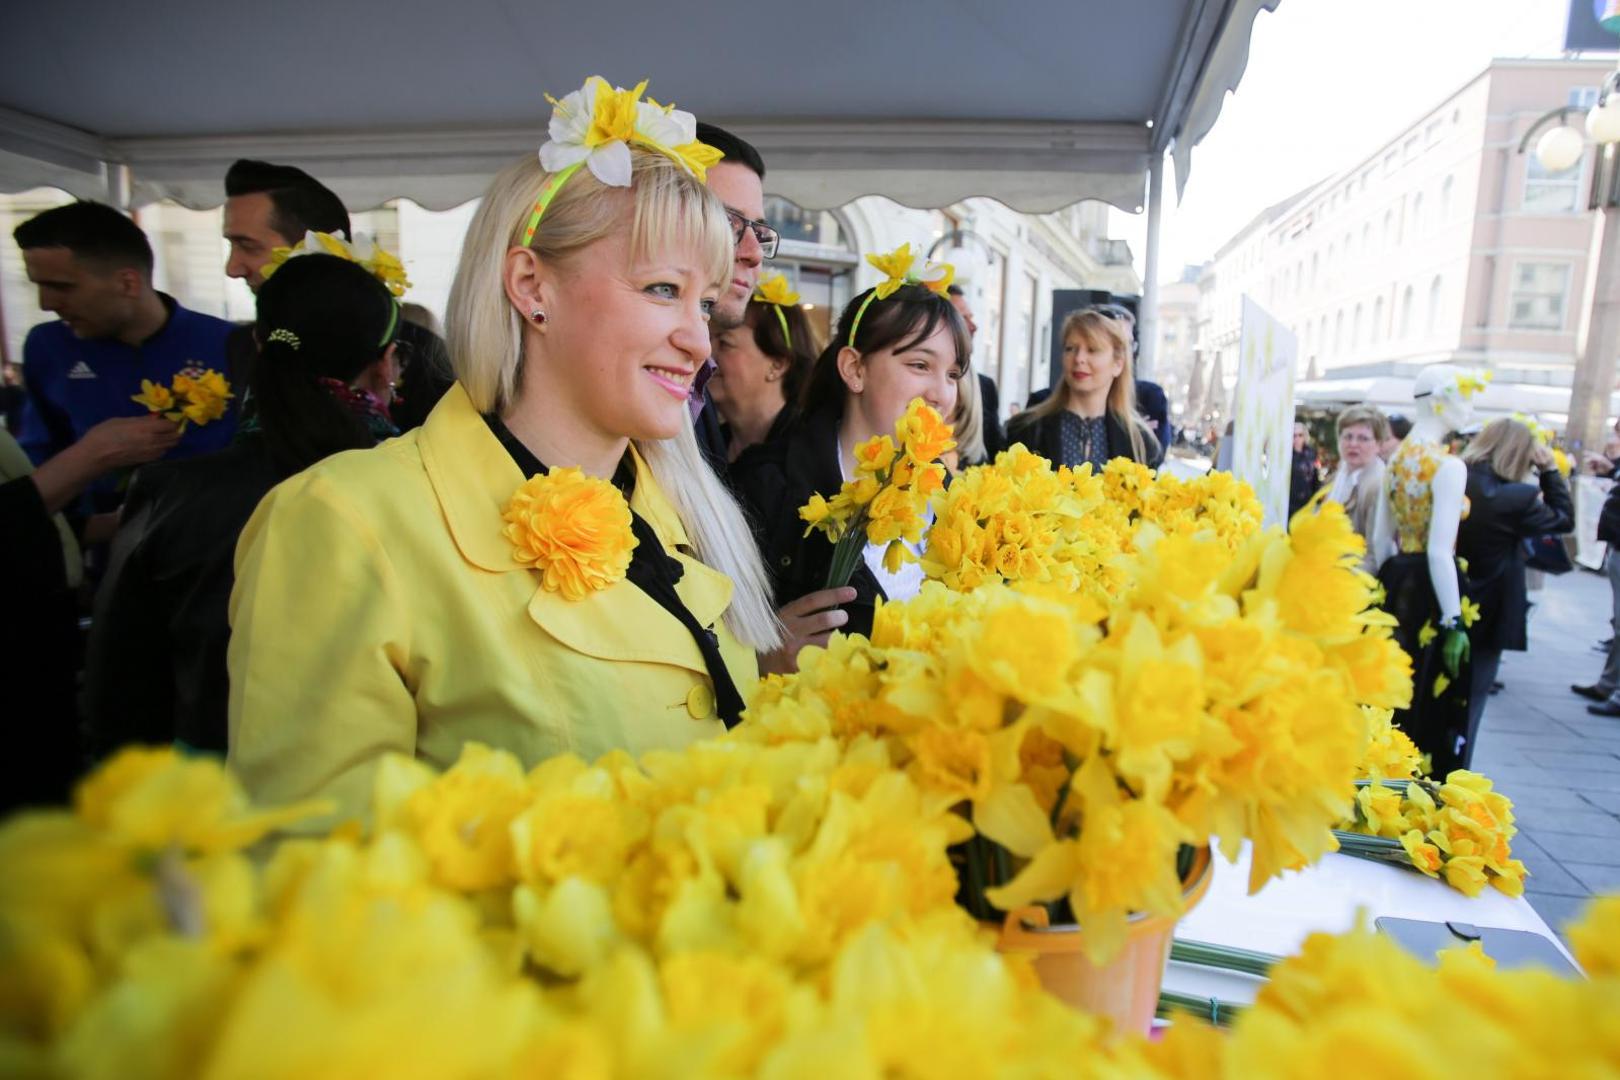 Međunarodni Dan narcisa održan je na Cvjetnom trgu u Zagrebu, a organizirale su ga udruge P.I.N.K. i Nismo same.